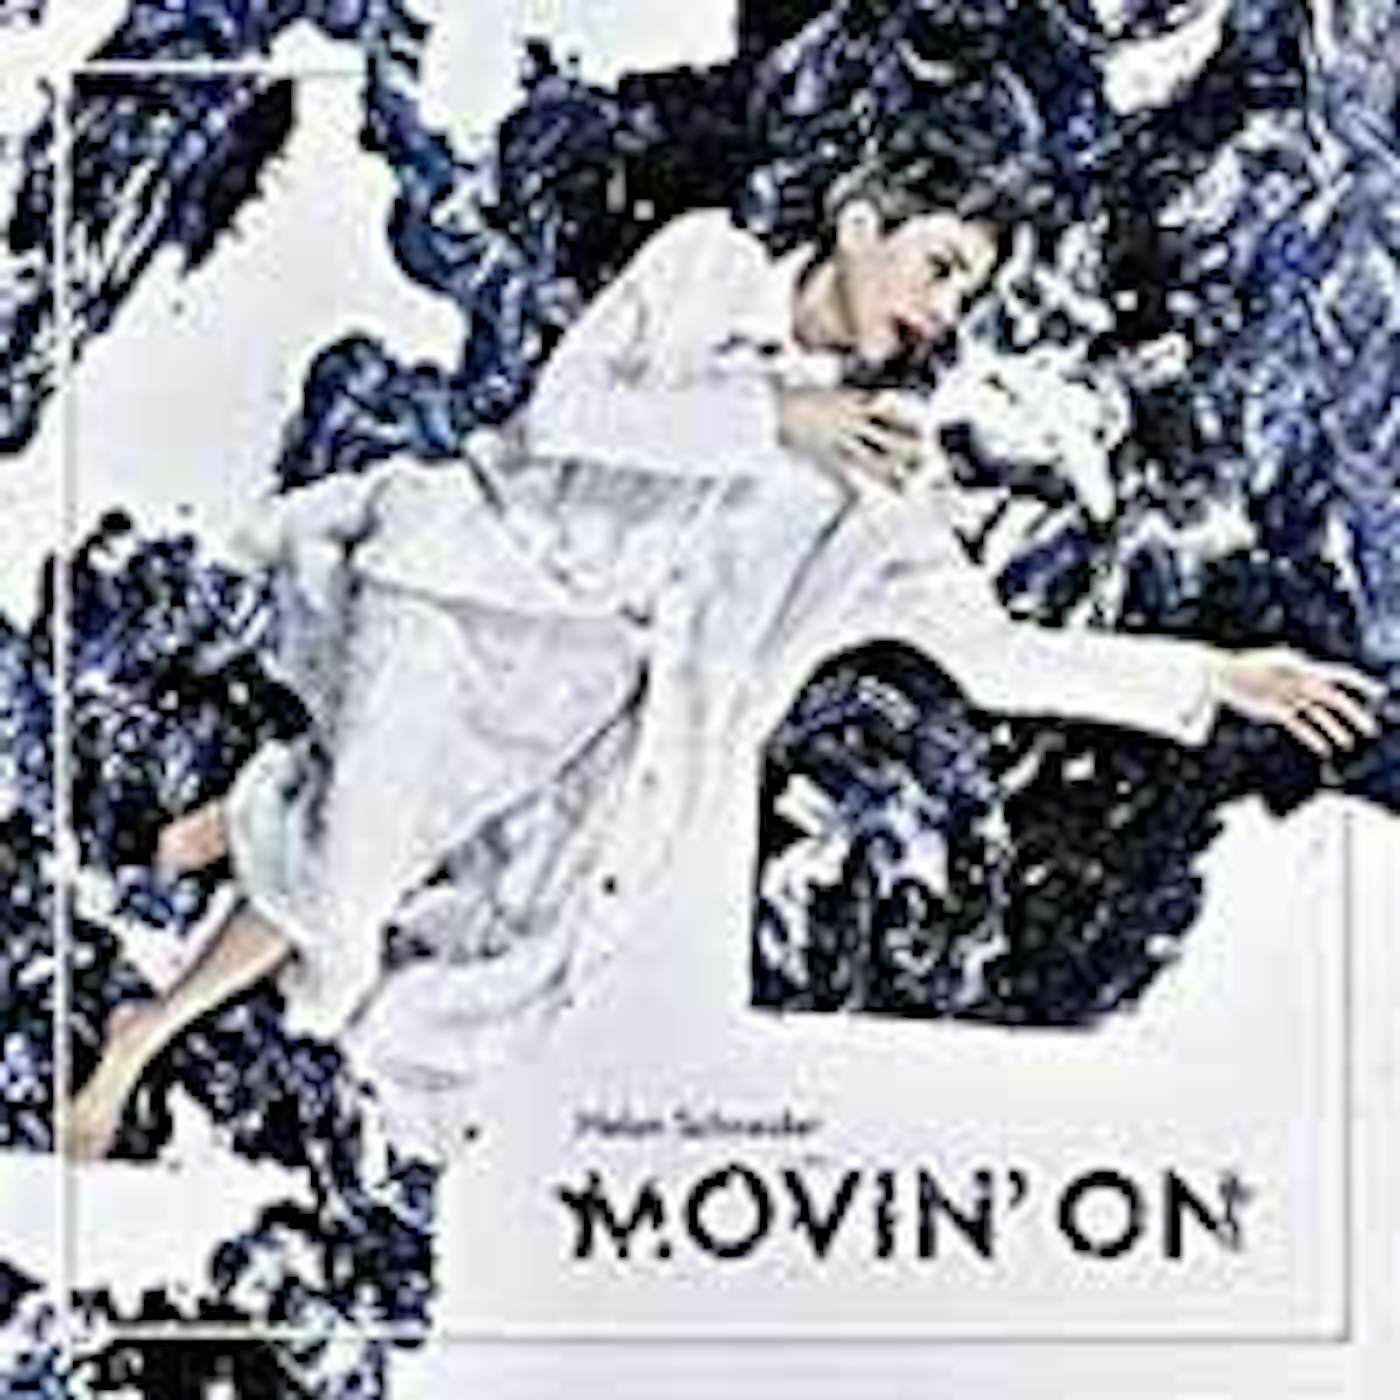 Helen Schneider LP - Movin' On (Lp+Cd)